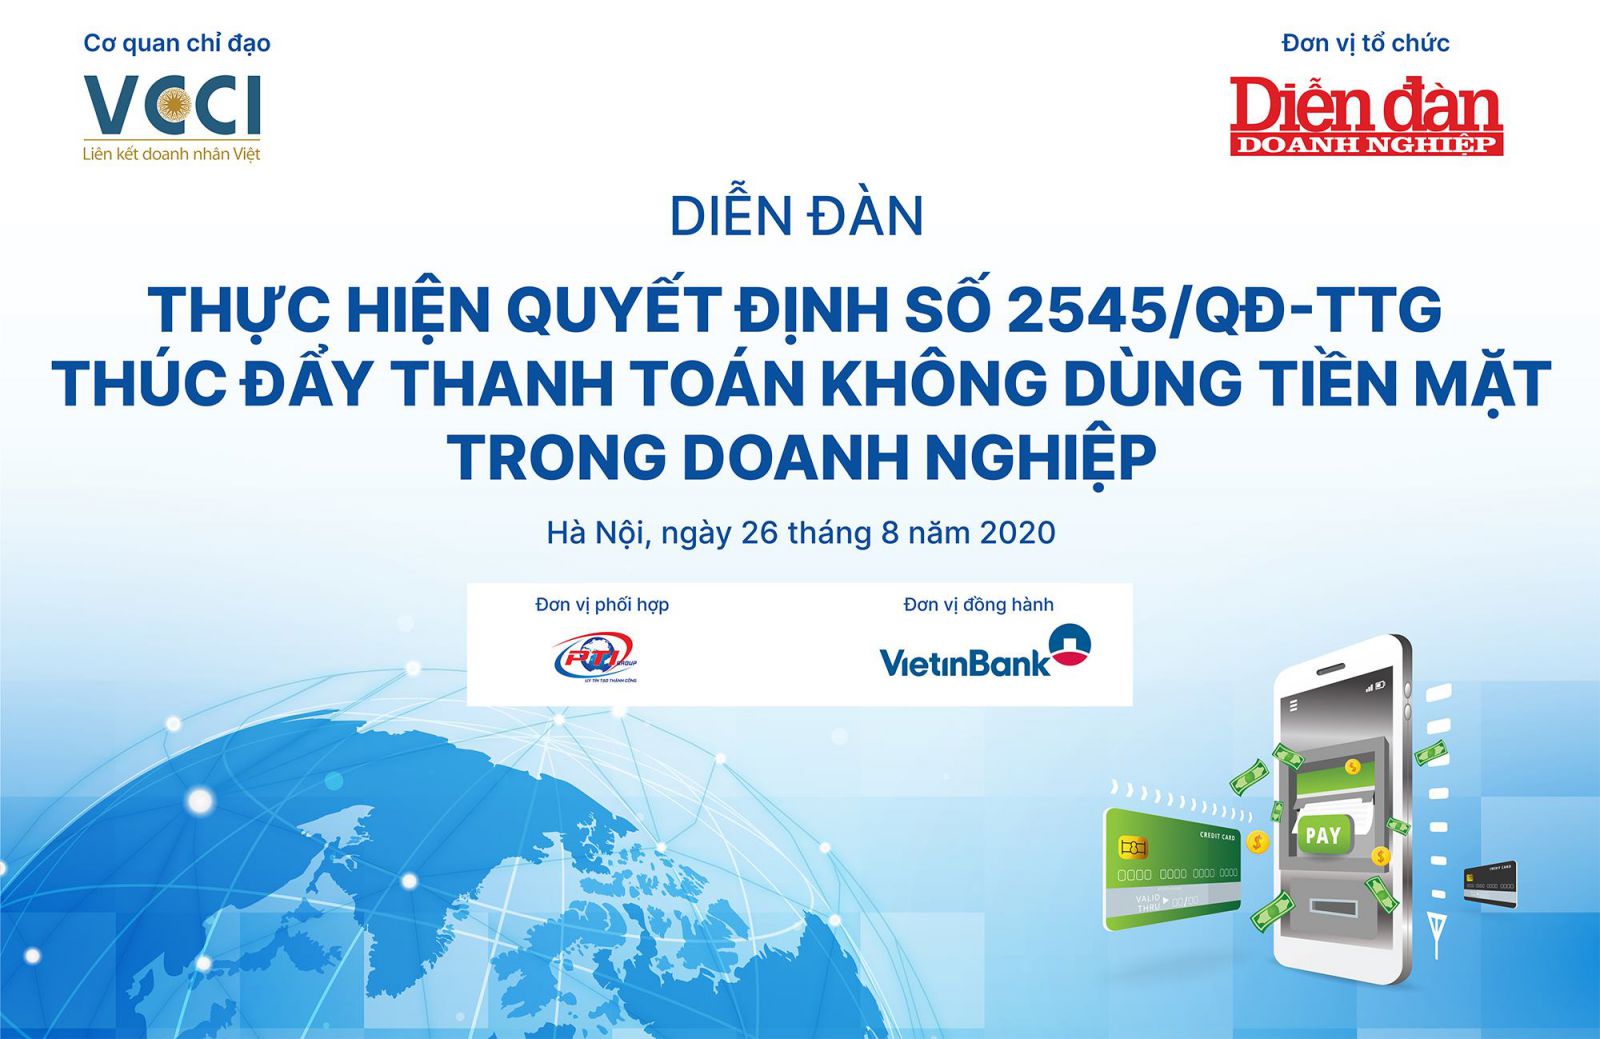 Diễn đàn “Thực hiện Quyết định số 2545/QĐ-TTg thúc đẩy thanh toán không dùng tiền mặt trong doanh nghiệp” vào lúc 13h30 ngày 26/8/2020 tại Hà Nội.